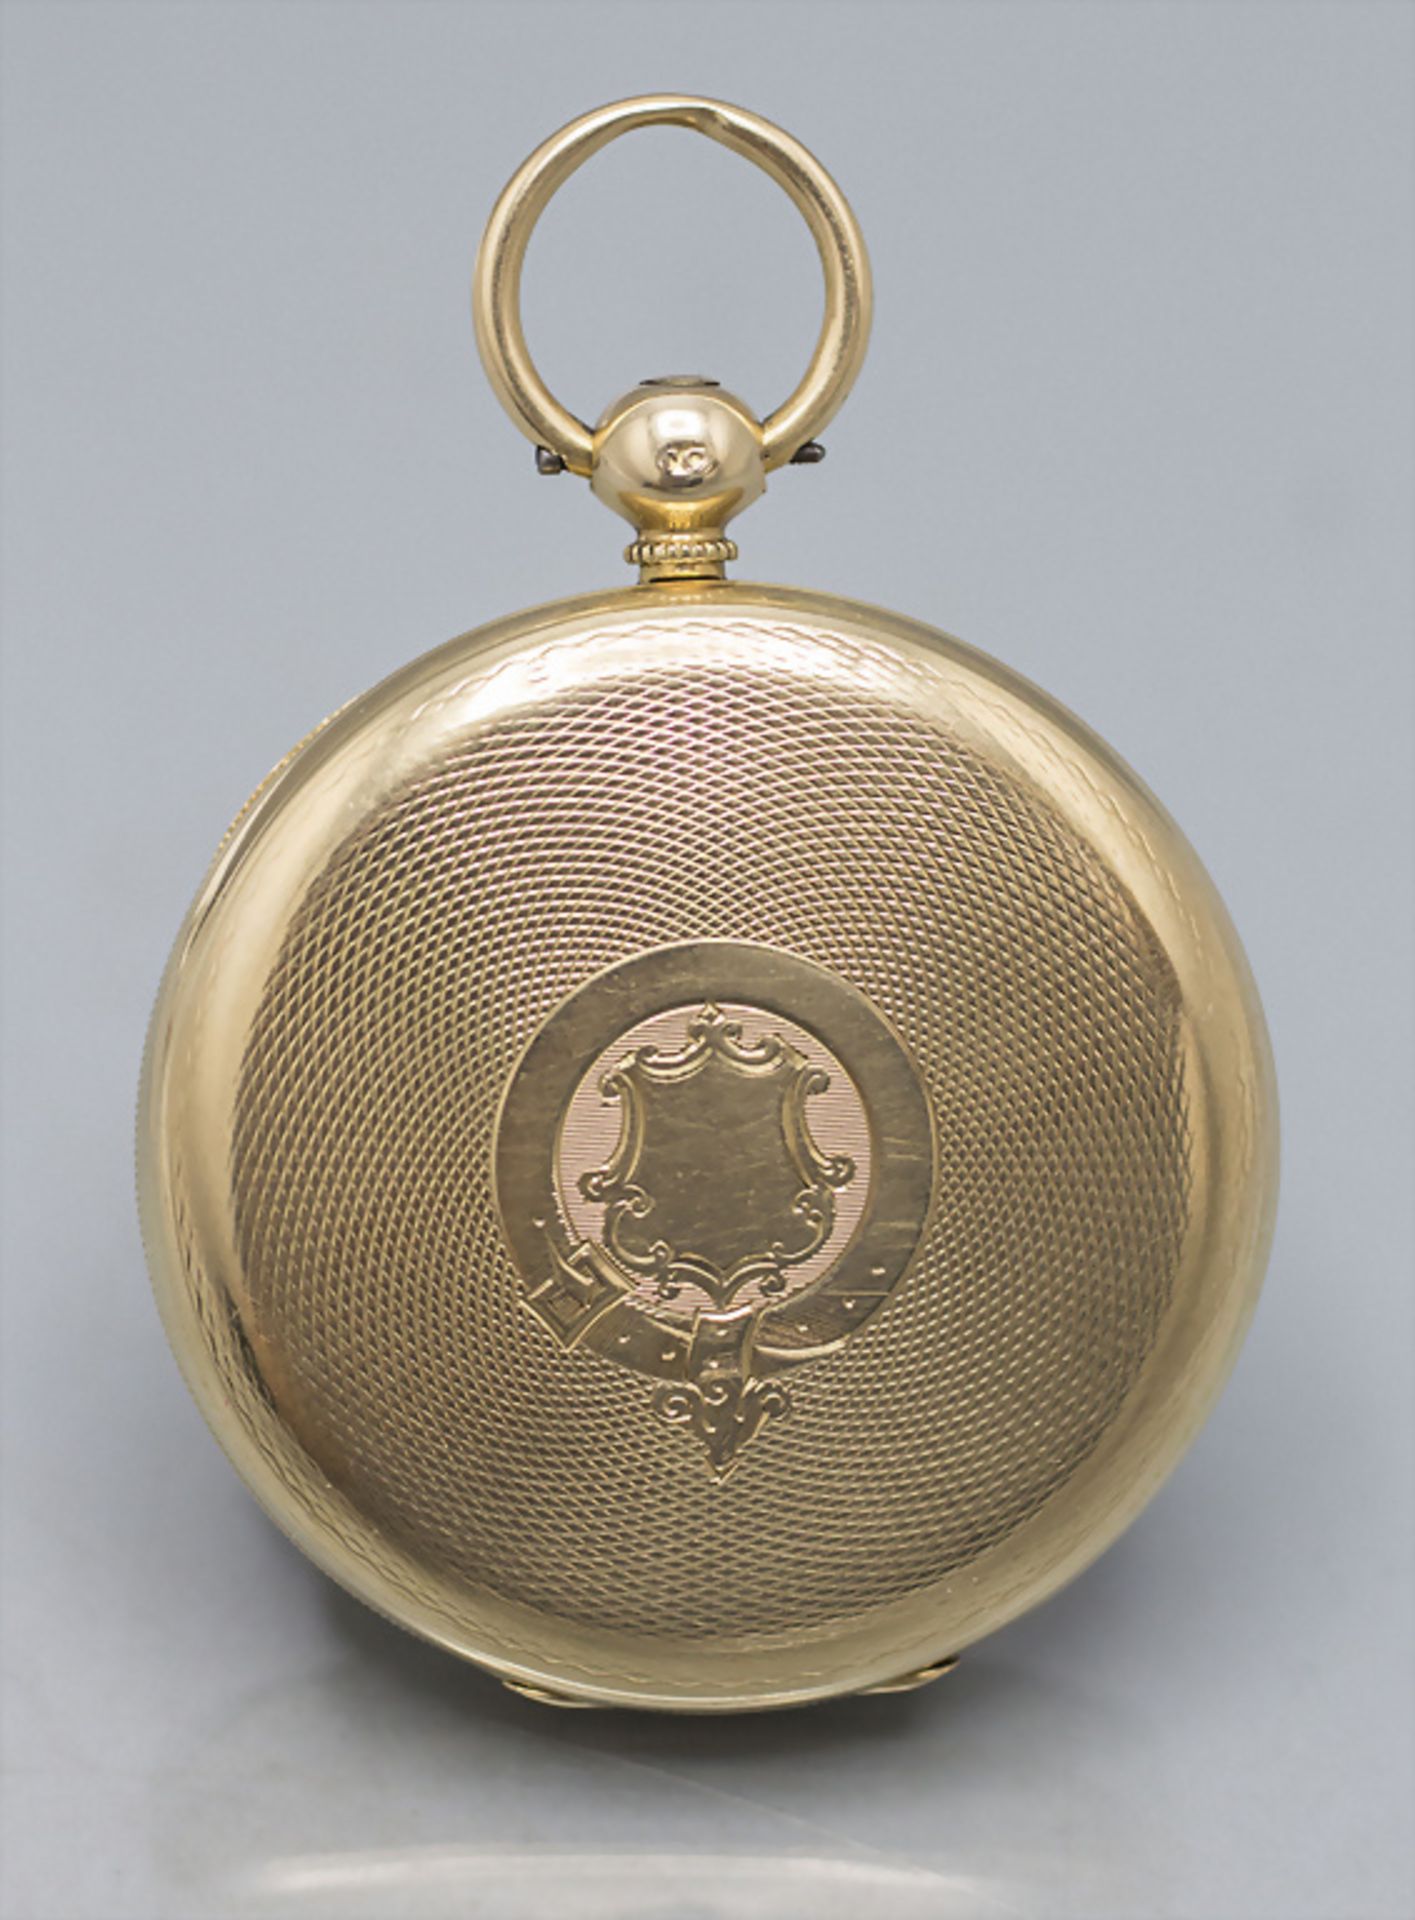 Offene Taschenuhr / An 18 ct gold pocket watch, Geo. Jamieson, Aberdeen, um 1820 - Bild 5 aus 6